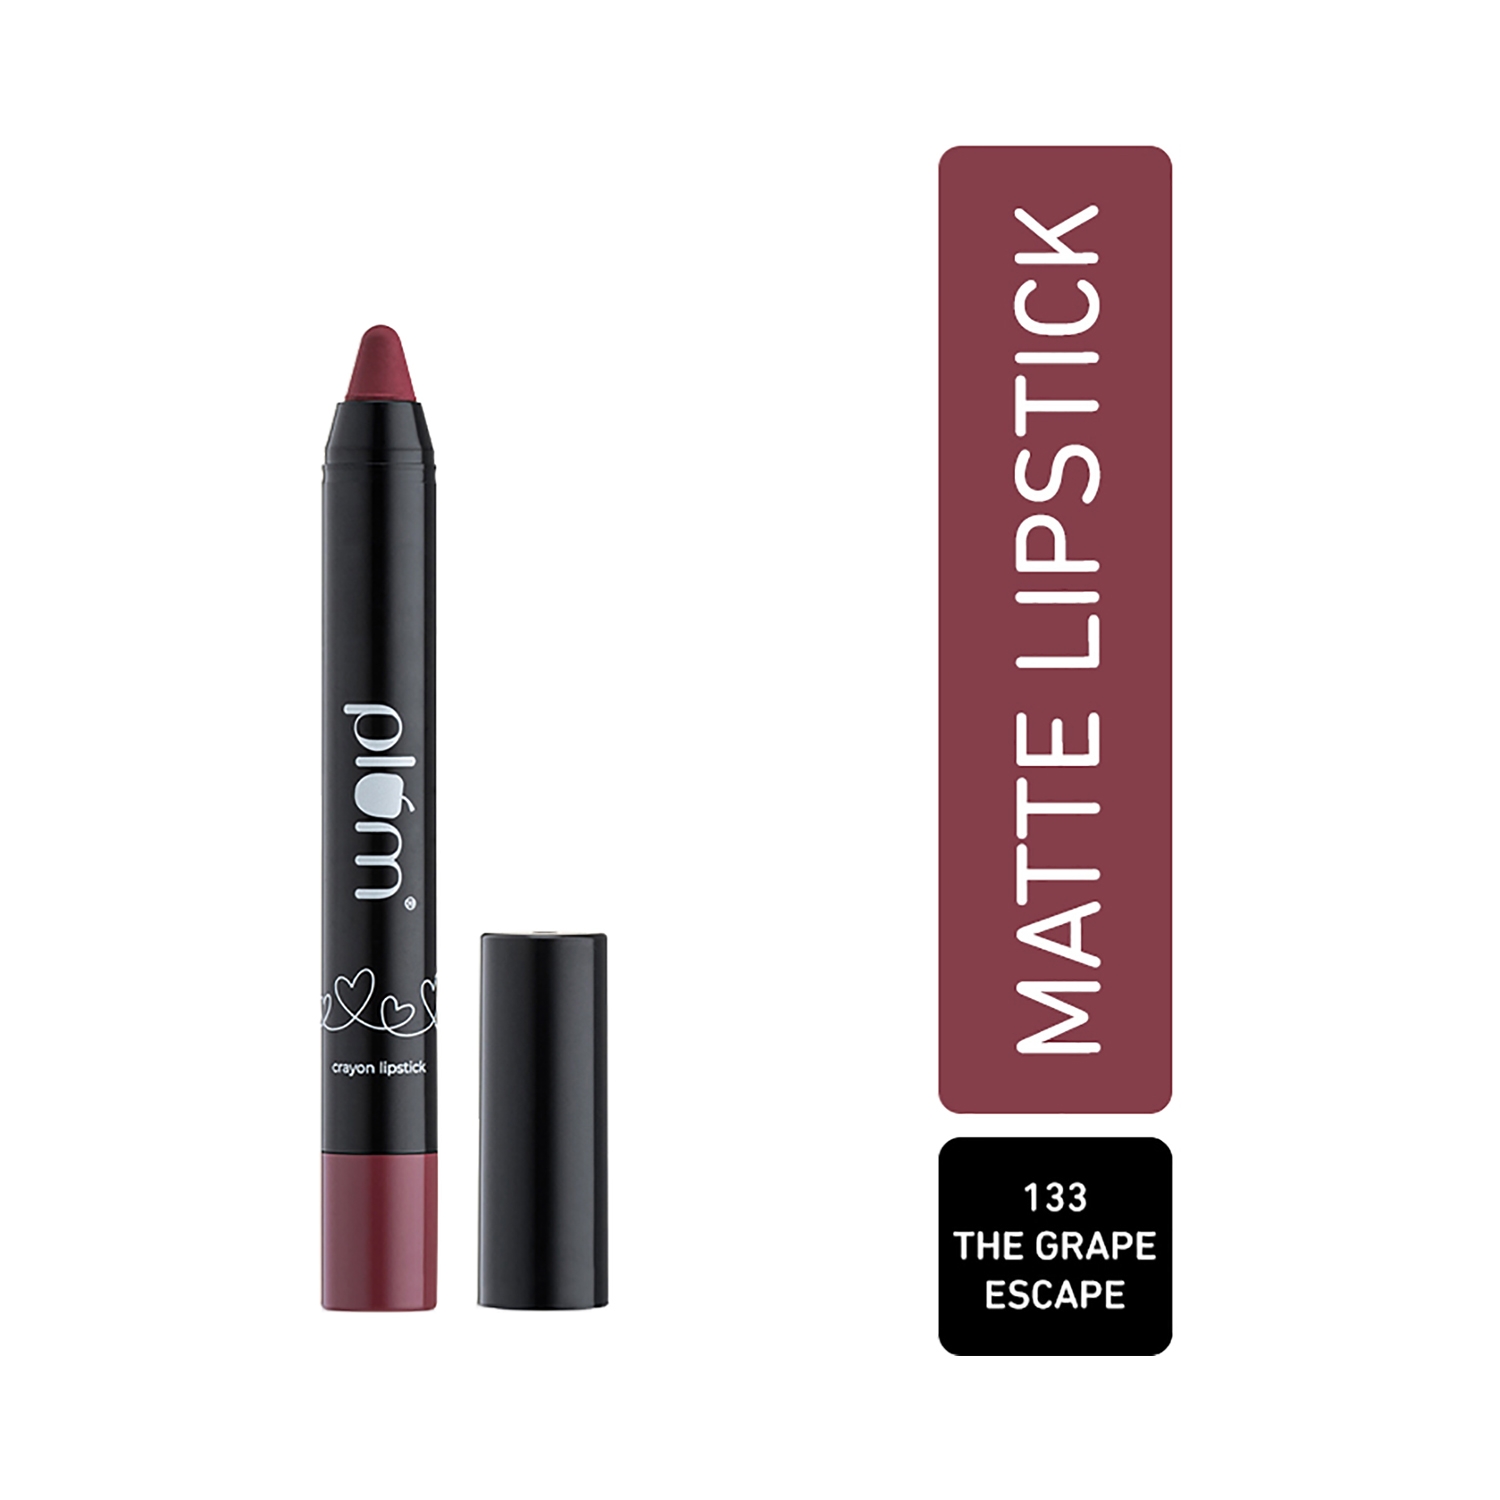 Plum Twist & Go Matte Crayon Lipstick with Ceramides & Hyaluronic Acid - 133 The Grape Escape (1.8g)